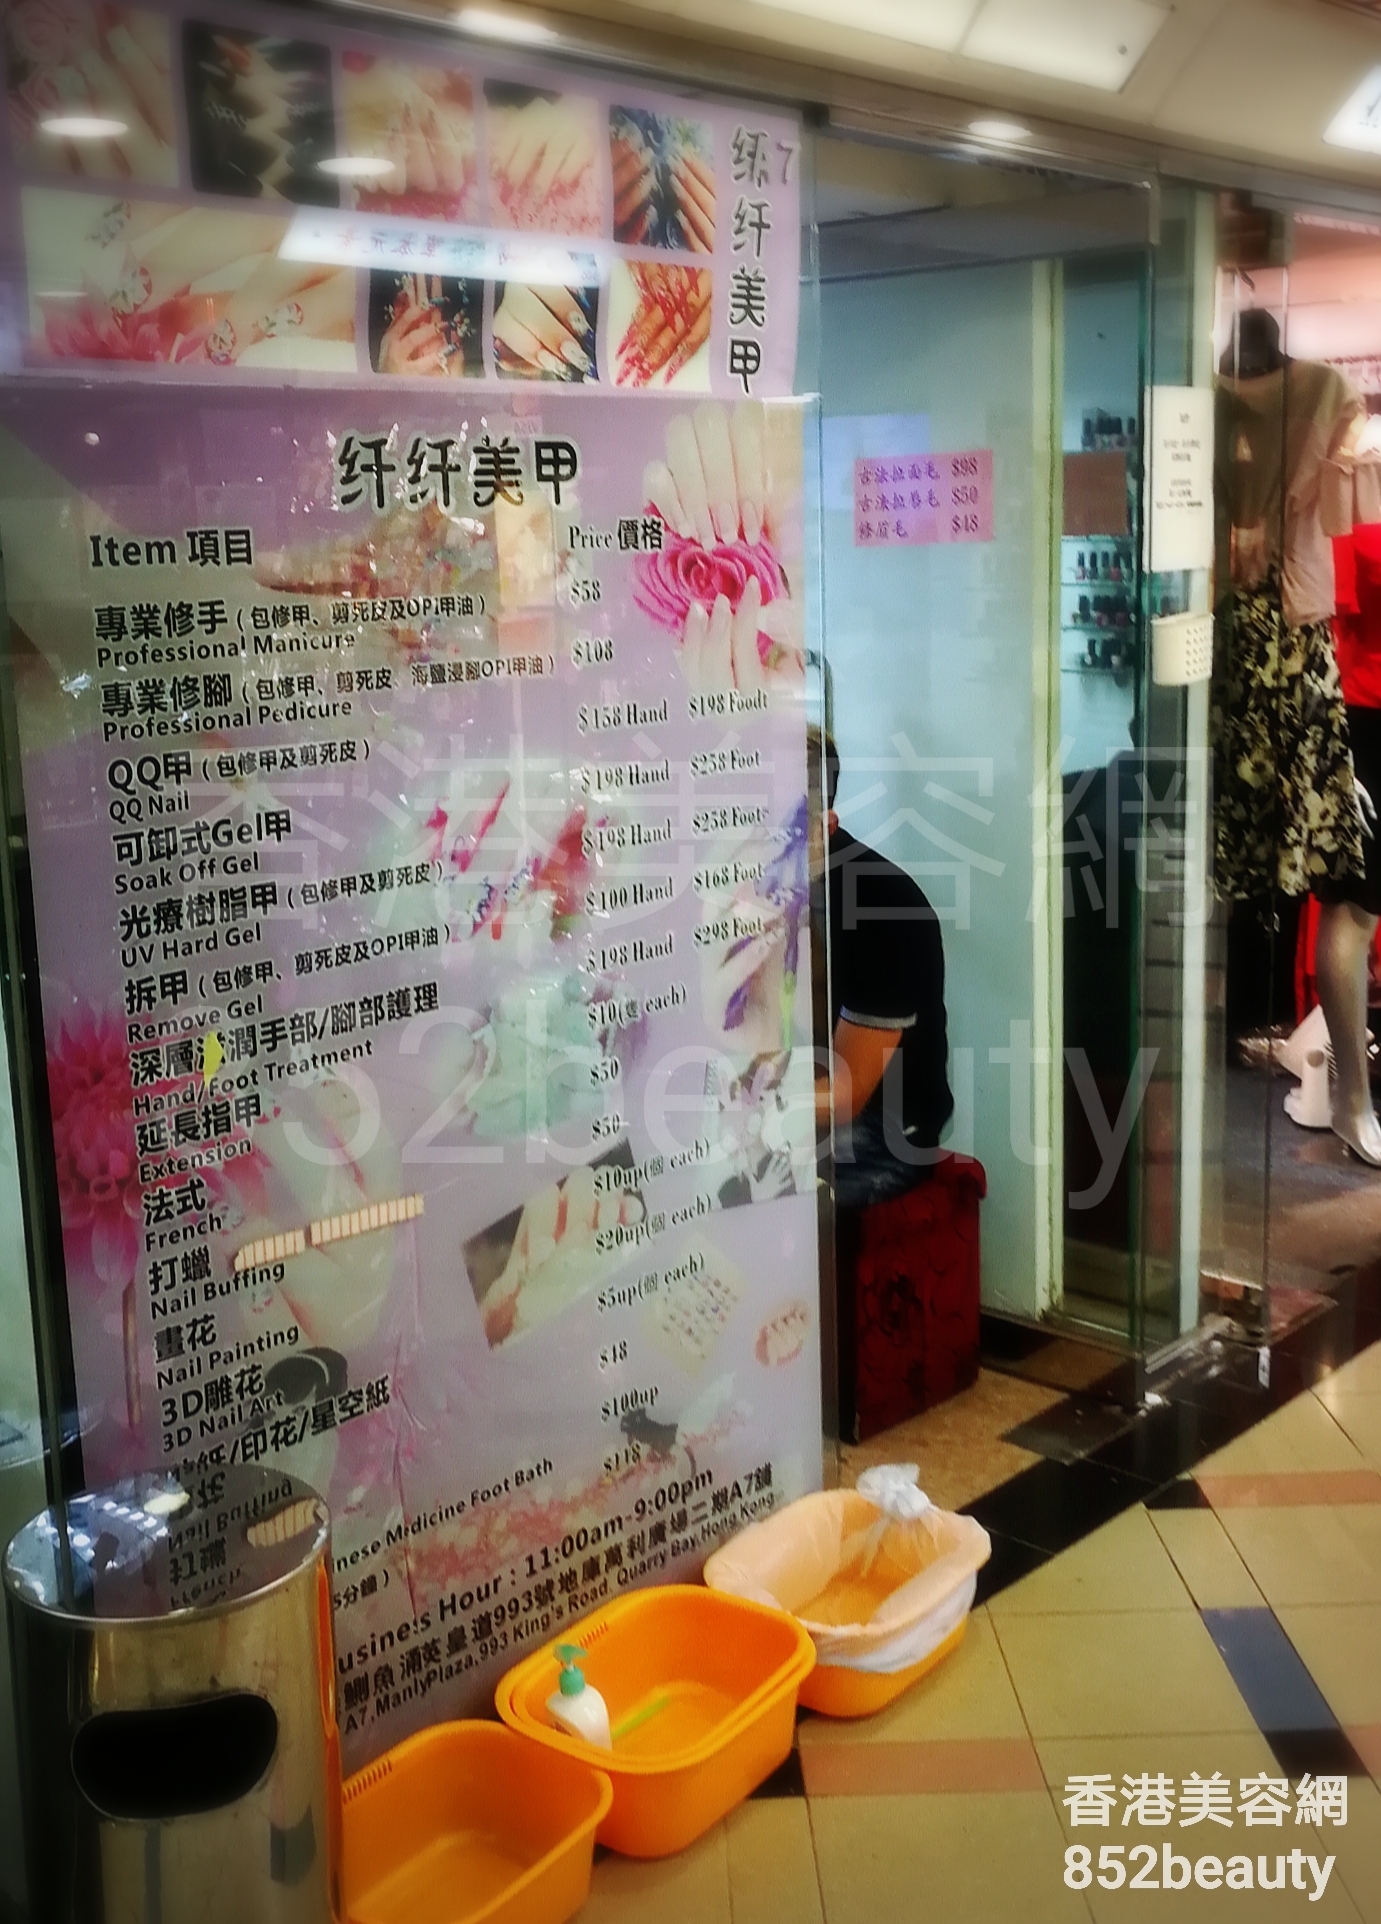 香港美容網 Hong Kong Beauty Salon 美容院 / 美容師: 纤纤美甲